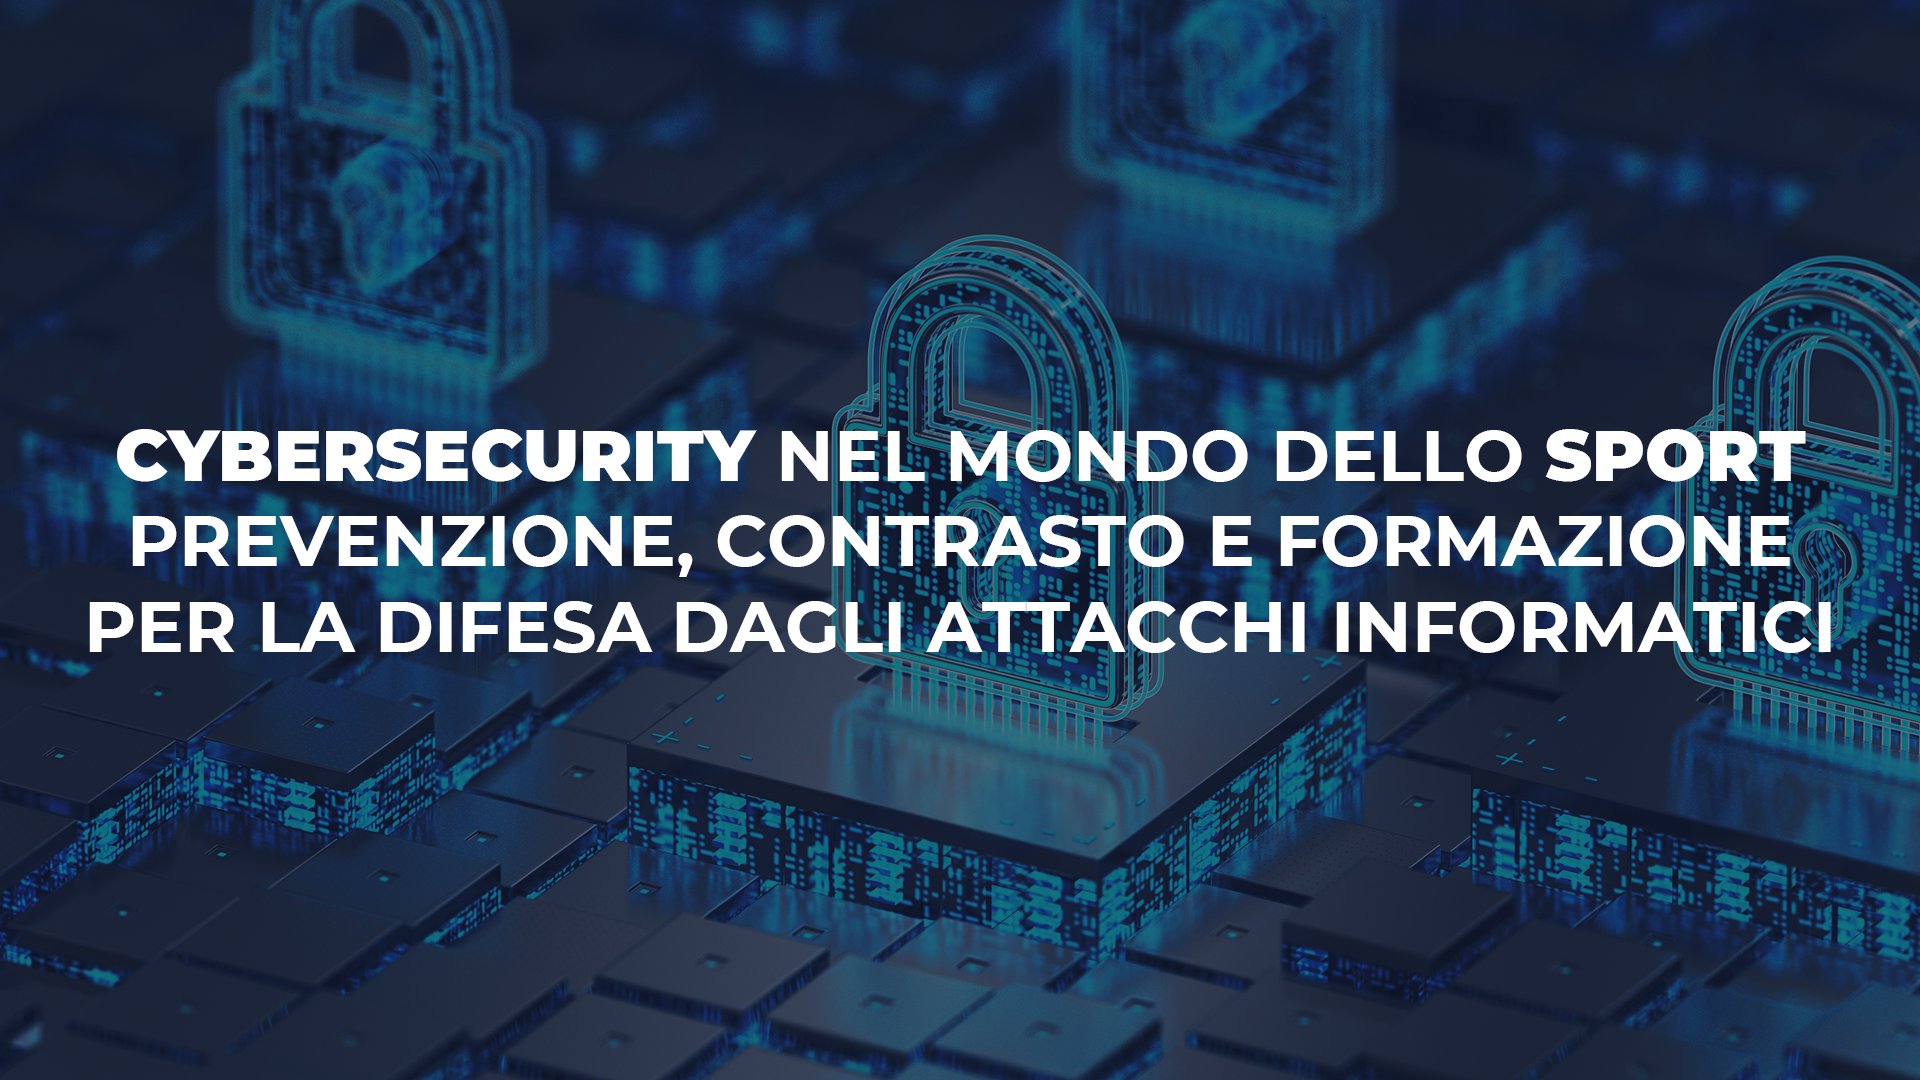 Cybersecurity nel mondo dello Sport. Mercoledi 22 maggio a Roma esperti, tecnici e istituzioni a confronto